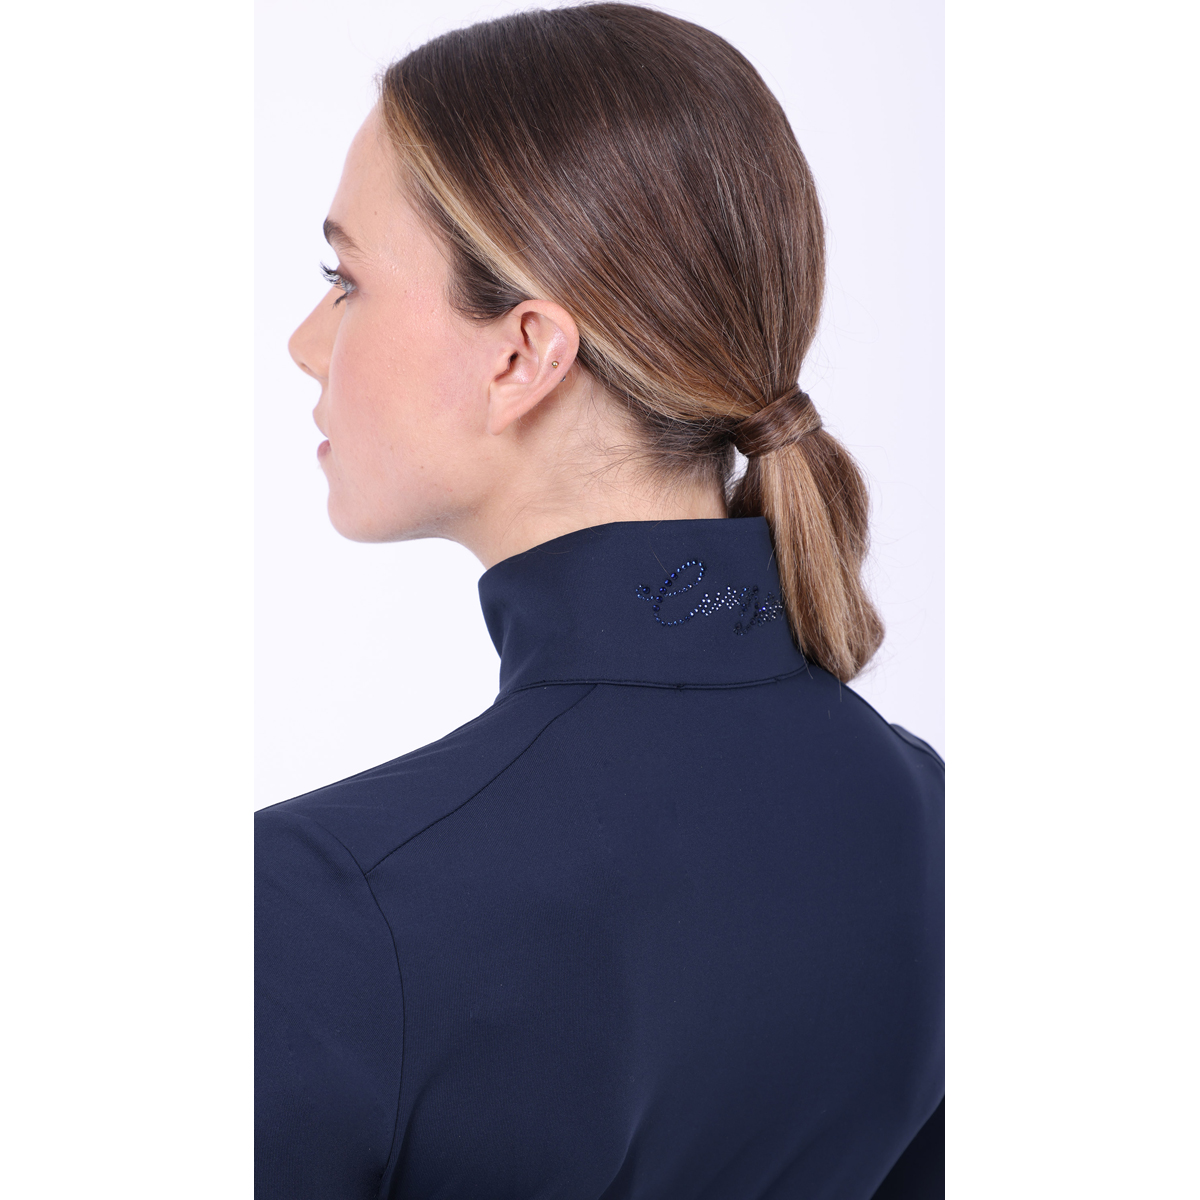 euro-star stilvolles Damen Langarm Funktions Shirt ESOlivia - black leaf - M - 6